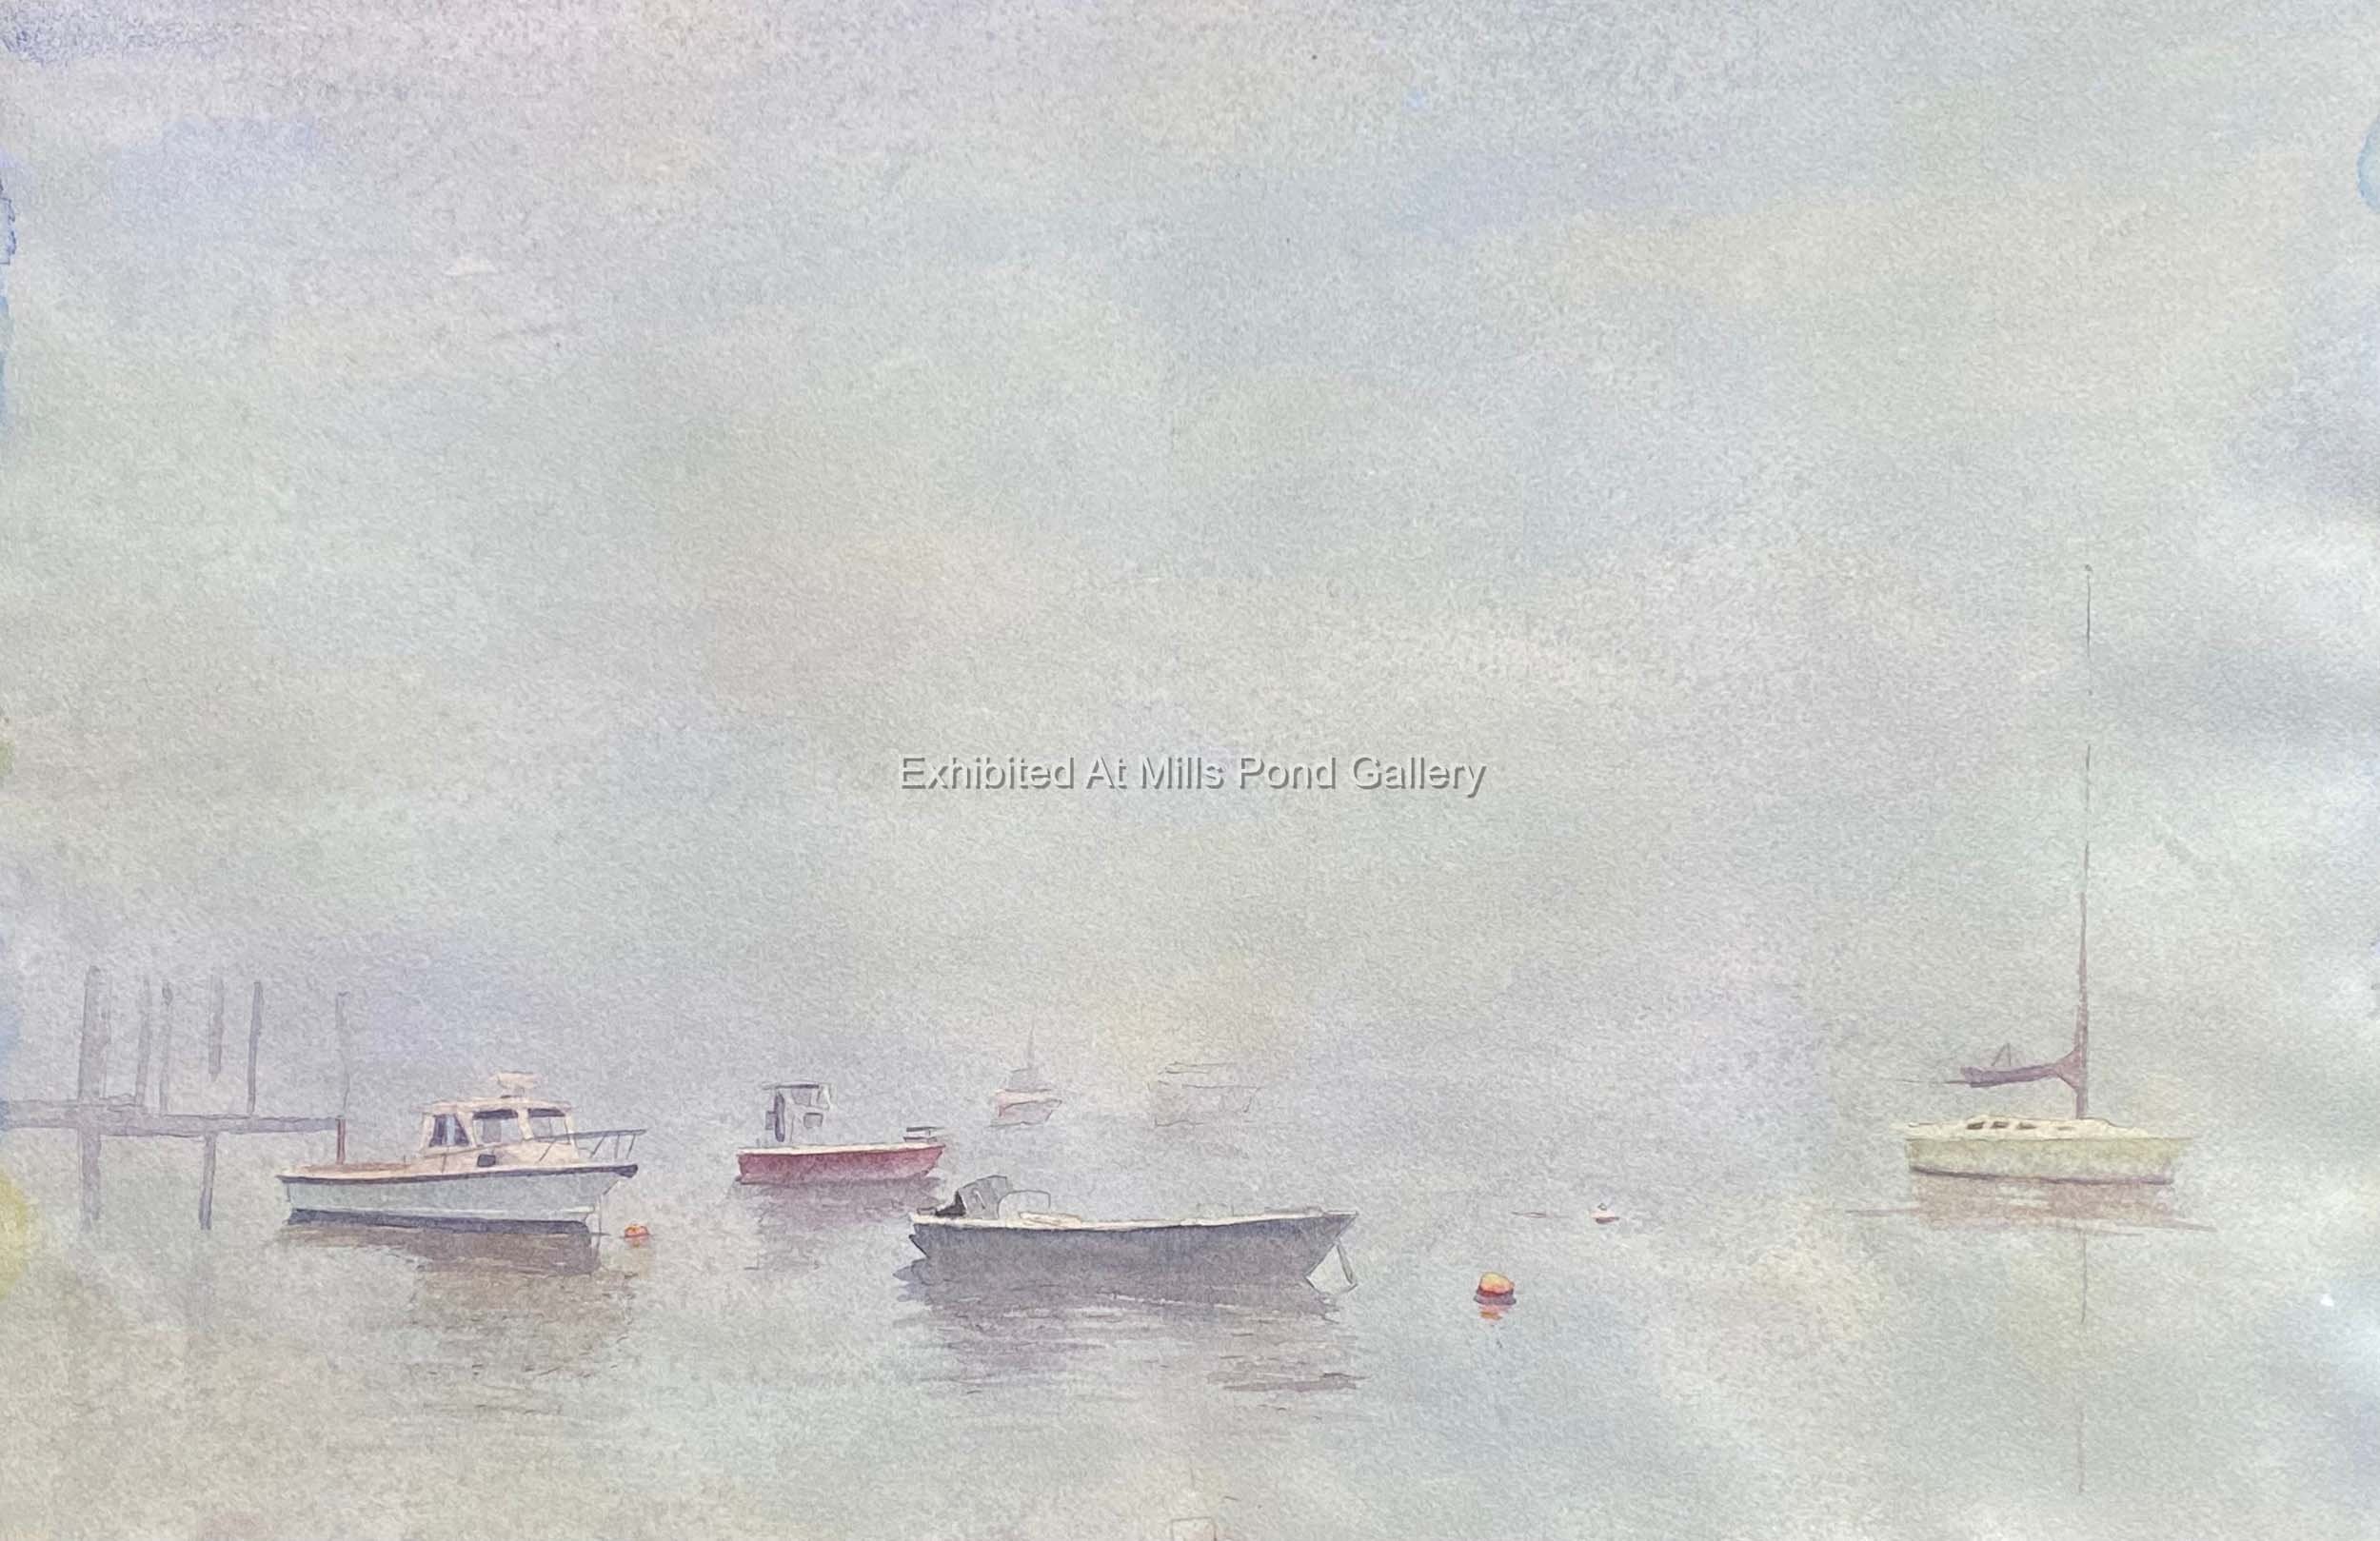 Tracy Mahler Tekverk-Harbor Fog-Watercolor.jpg